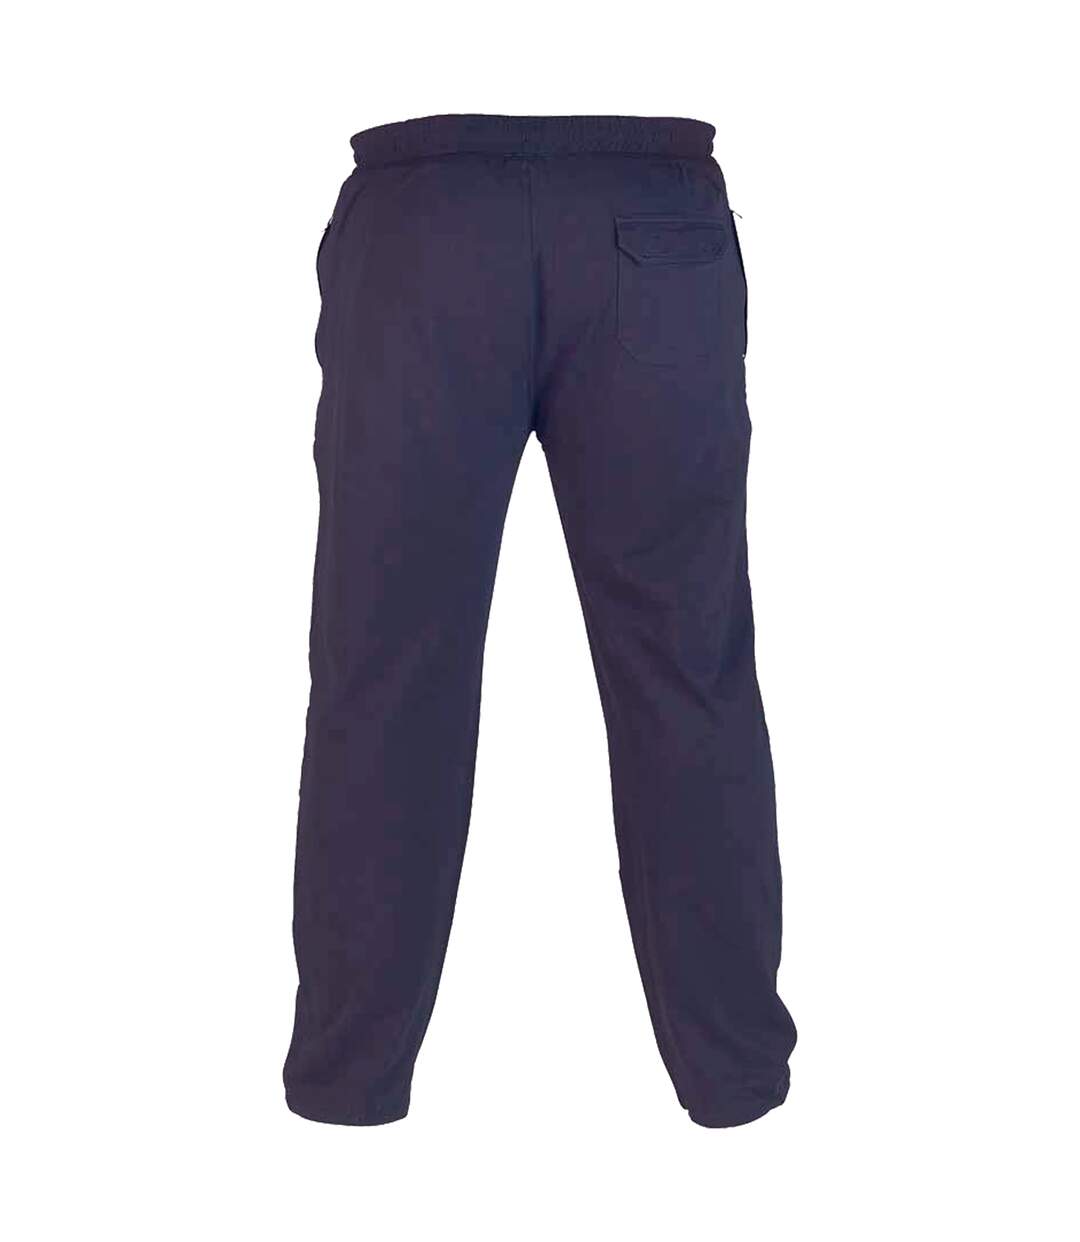 Duke - Pantalon de jogging RORY - Homme (Bleu marine) - UTDC135